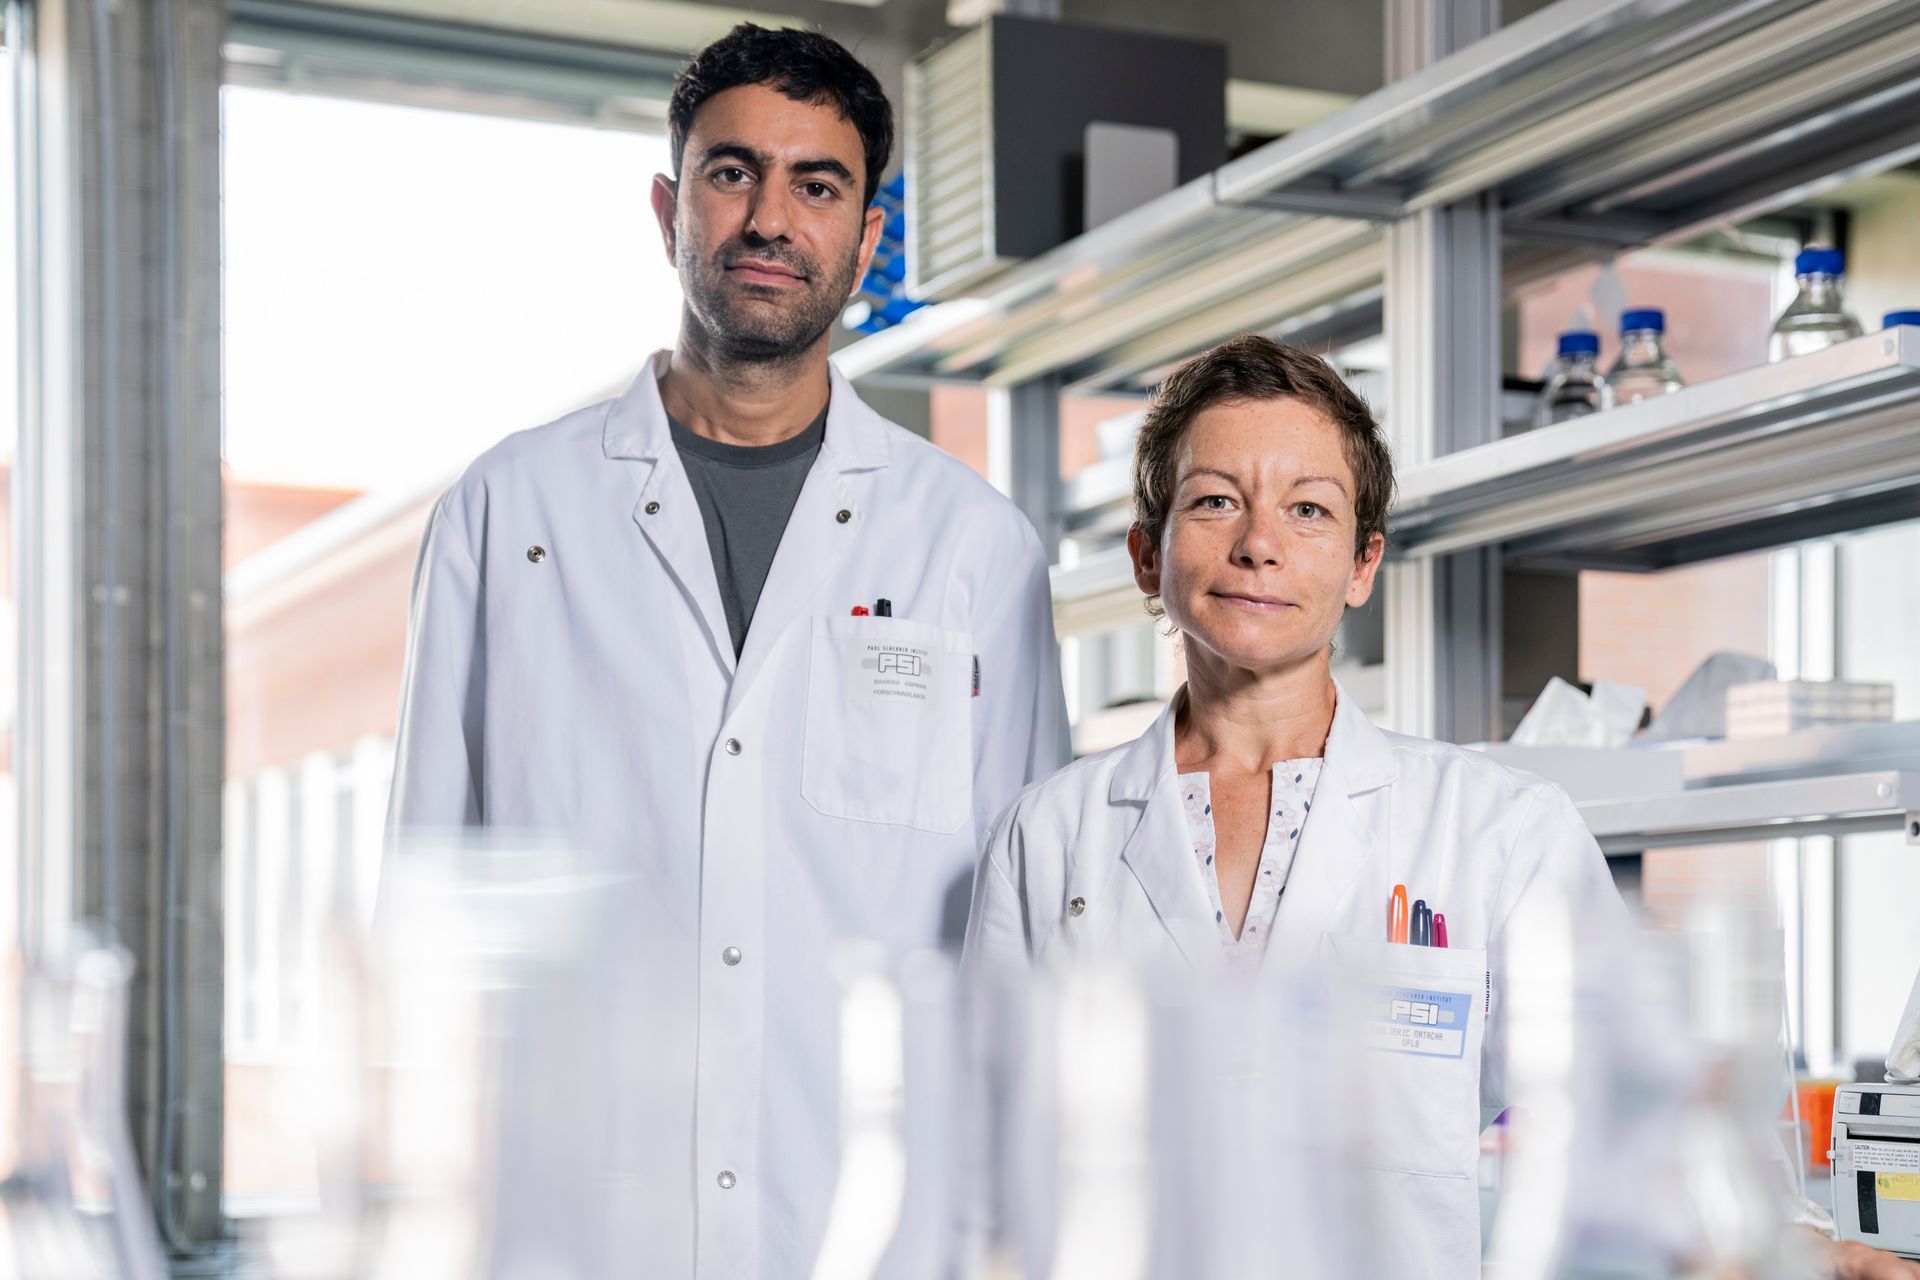 Natacha Gaillard e Ashwani Sharma sono ricercatori del Laboratorio di Ricerca Biomolecolare dell'Istituto Paul Scherrer di Villigen